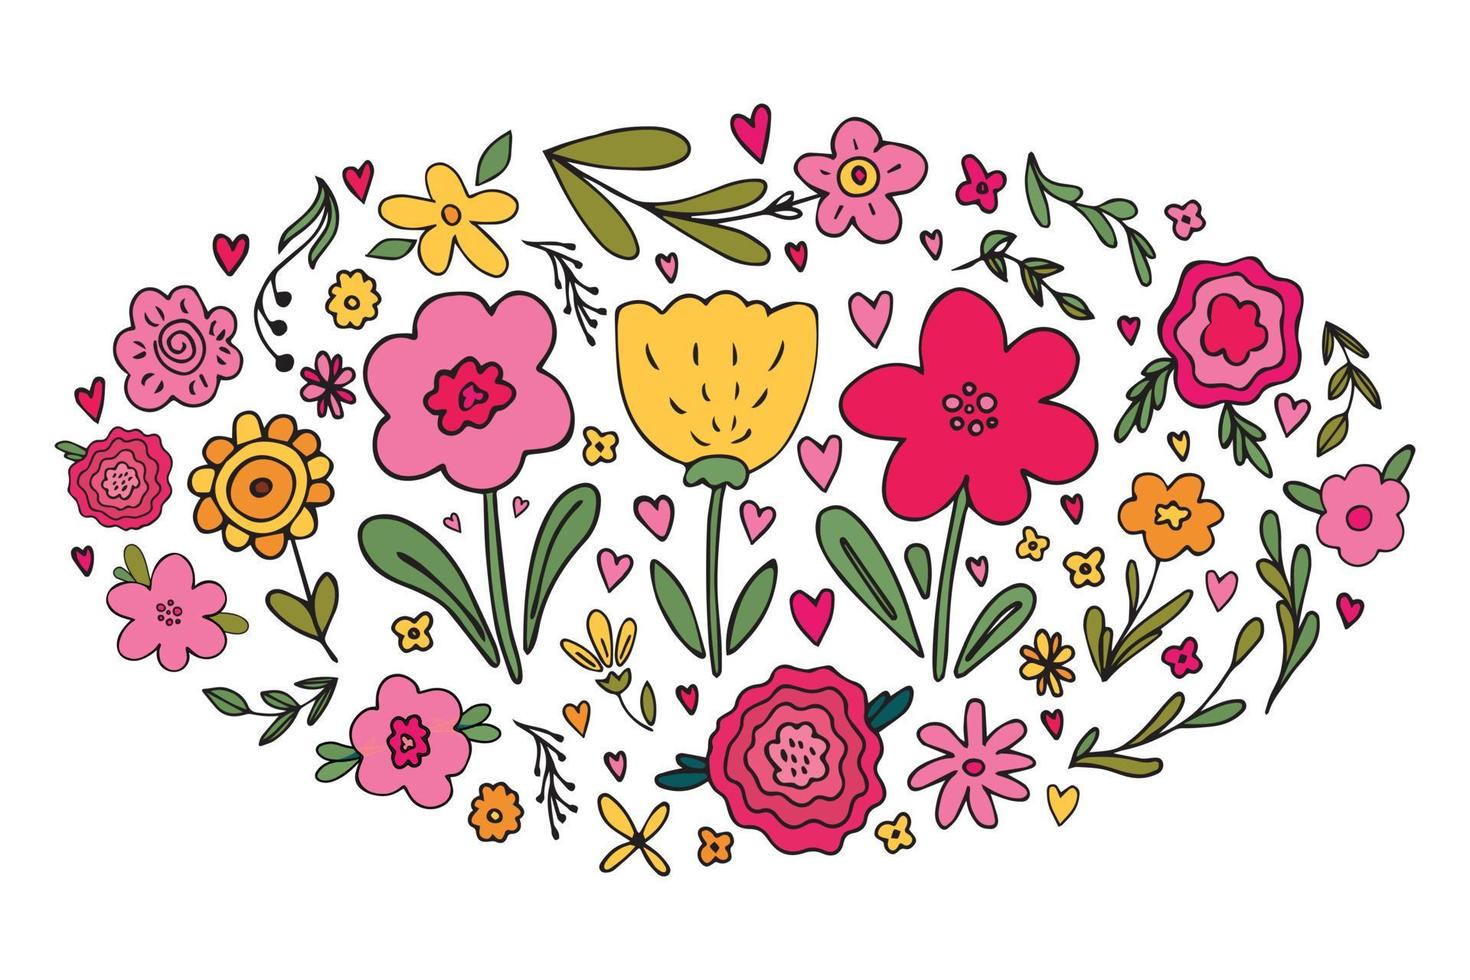 grande conjunto de vários rabiscos florais simples desenhados à mão - flor, erva, ramo, coração. ilustração em vetor gira de flores de primavera verão em cores da paleta limitada. elemento de design infantil brilhante isolado.